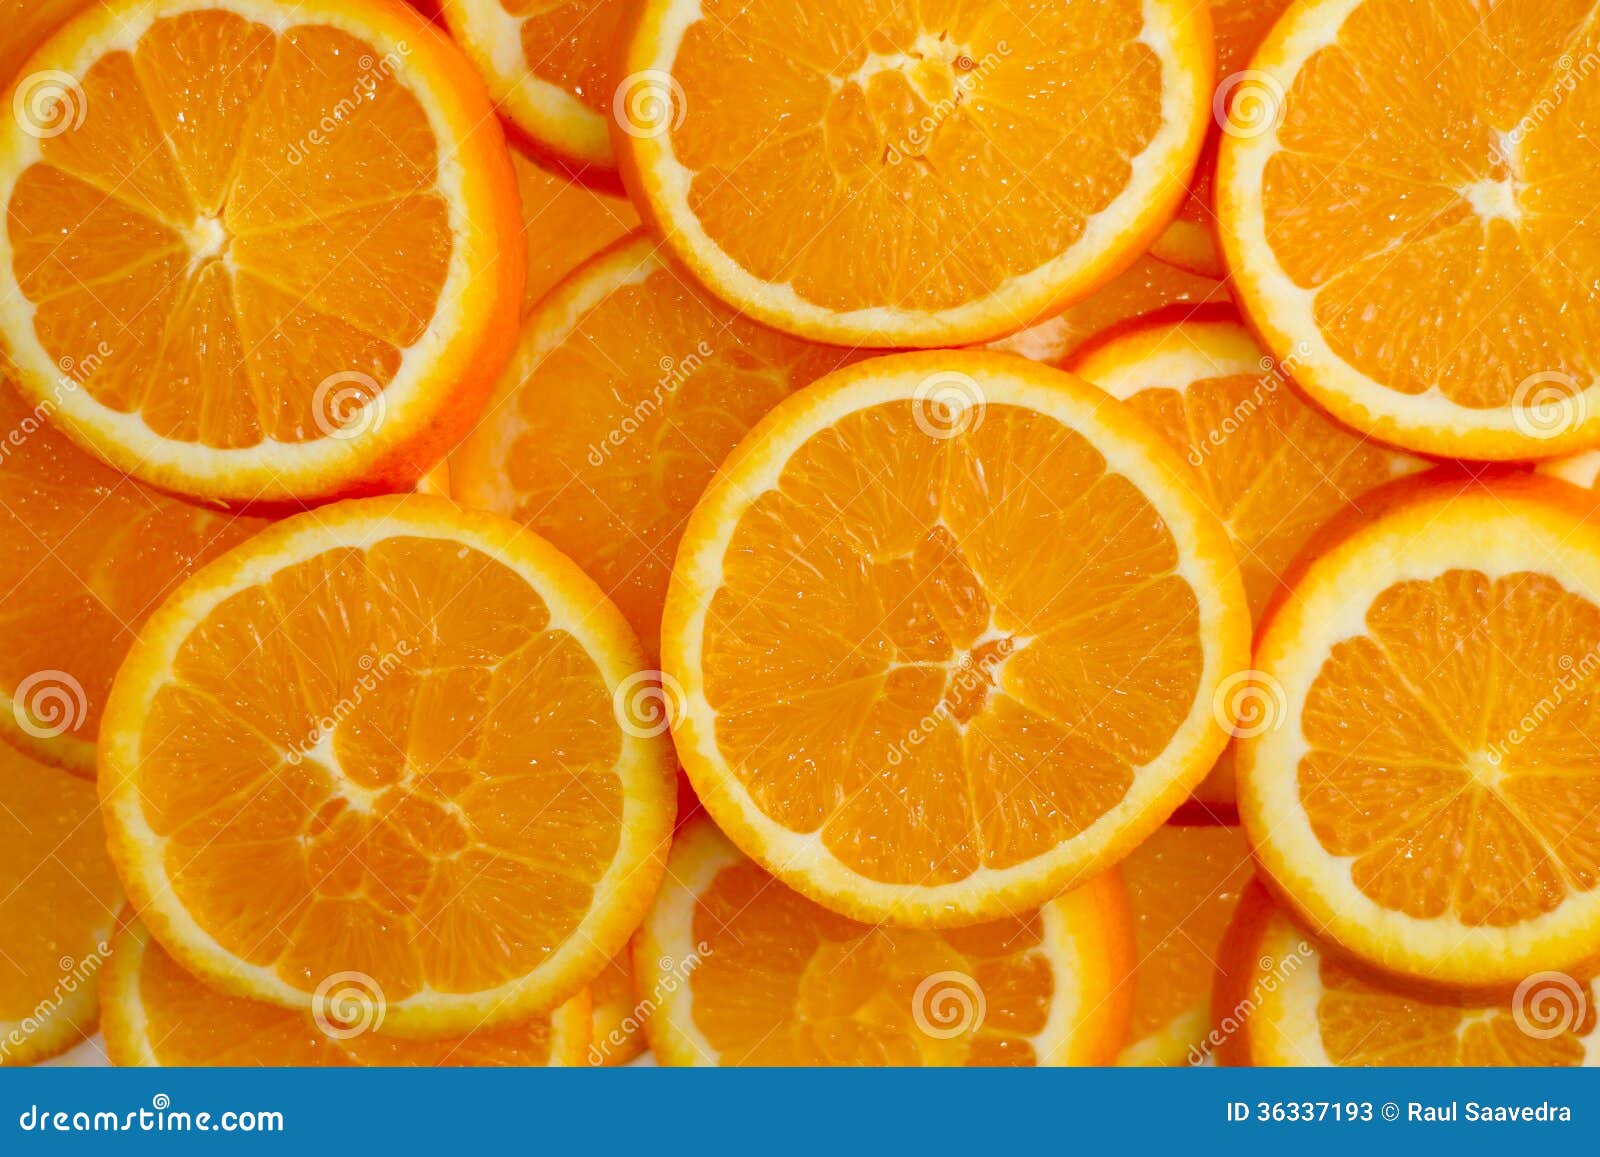 Orange stockbild. Bild von orange, fotographie, frühstück - 36337193